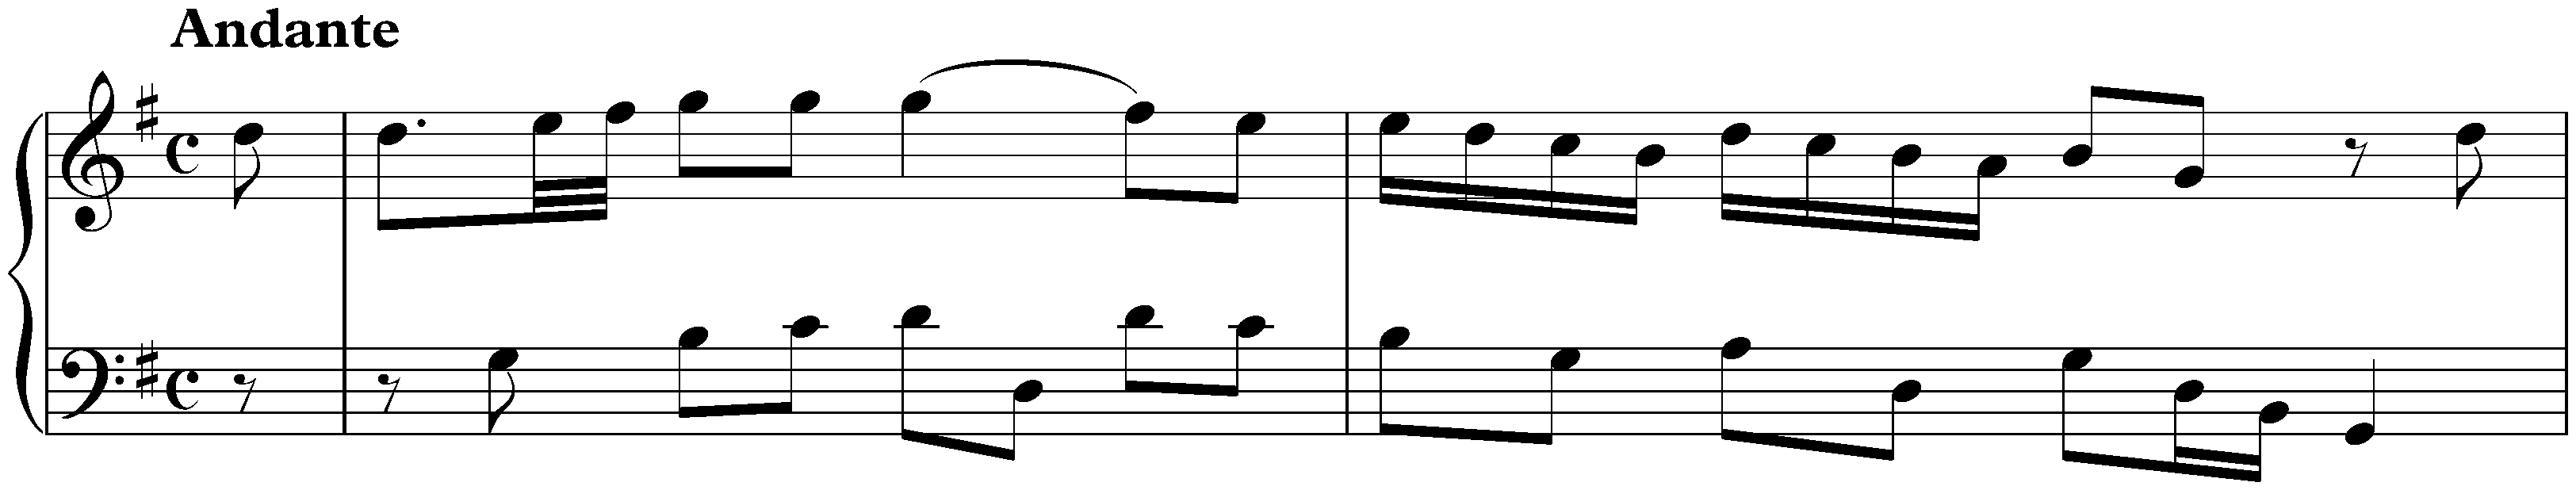 Sonata in G major, Hob. XVI:8; 3. Andante